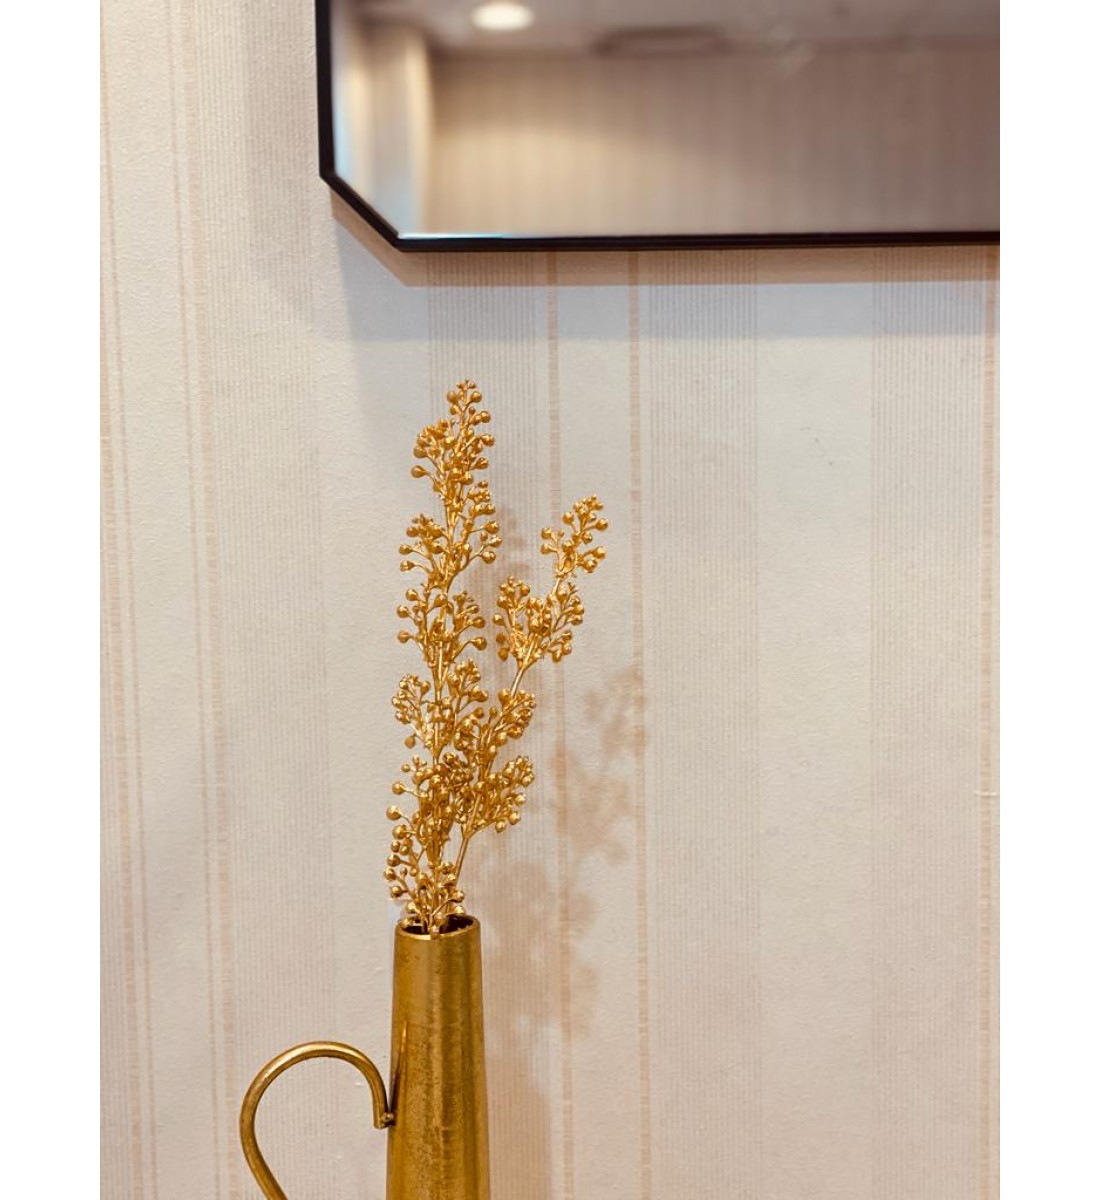 Rose arrangement of a golden artificial branch 50 cm